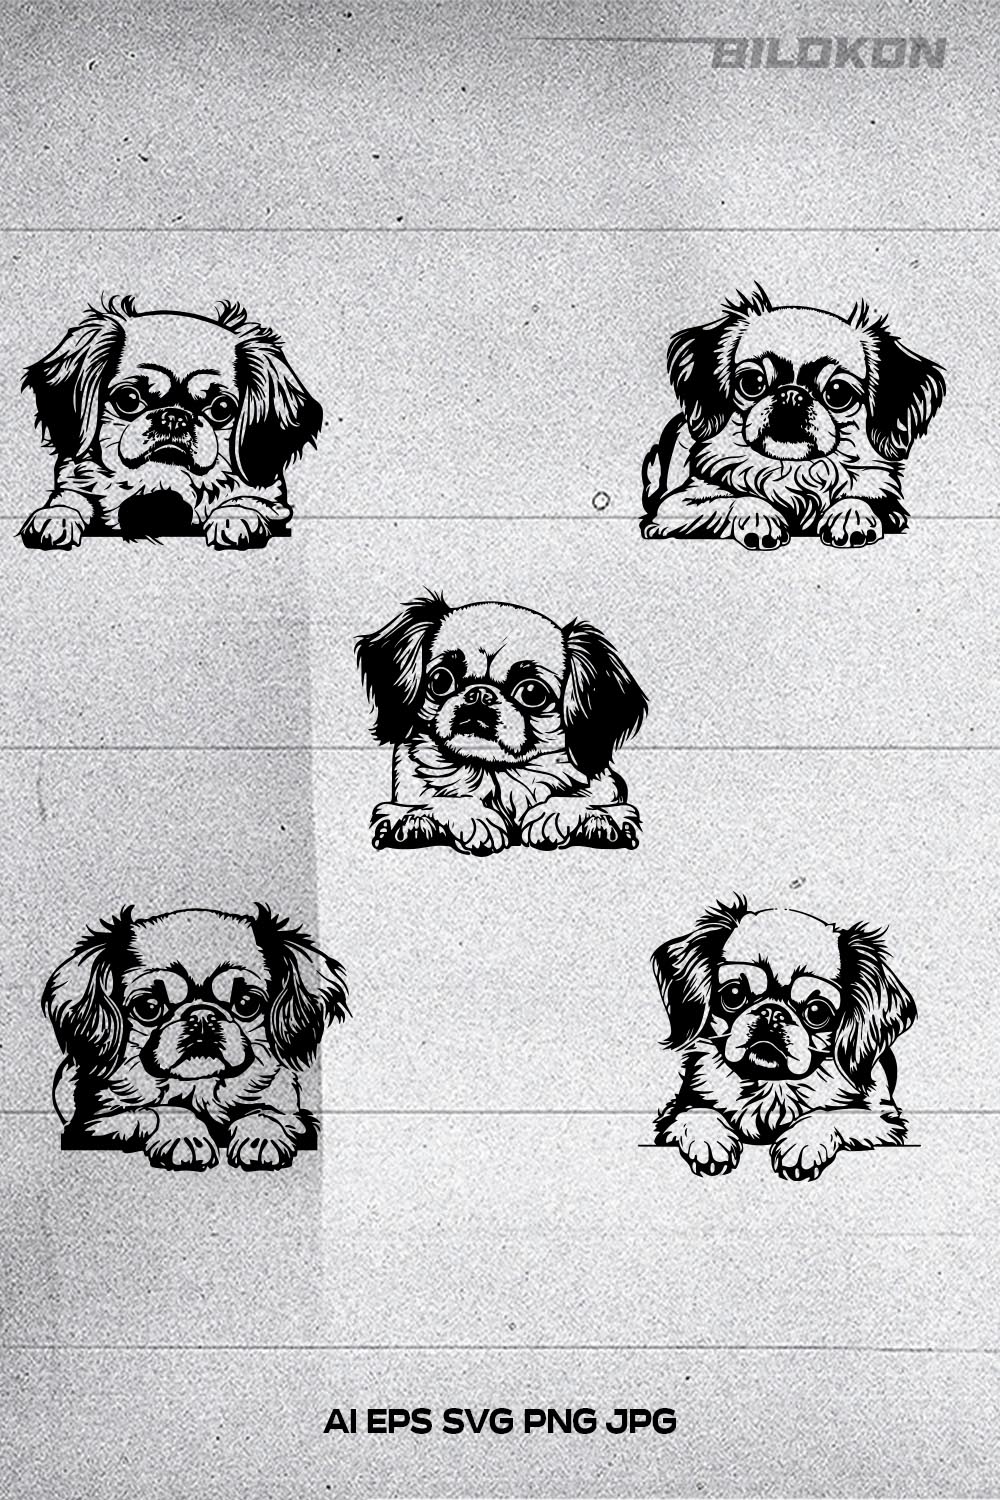 Pekingese dog head, SVG, Vector, Illustration, SVG Bundle pinterest preview image.